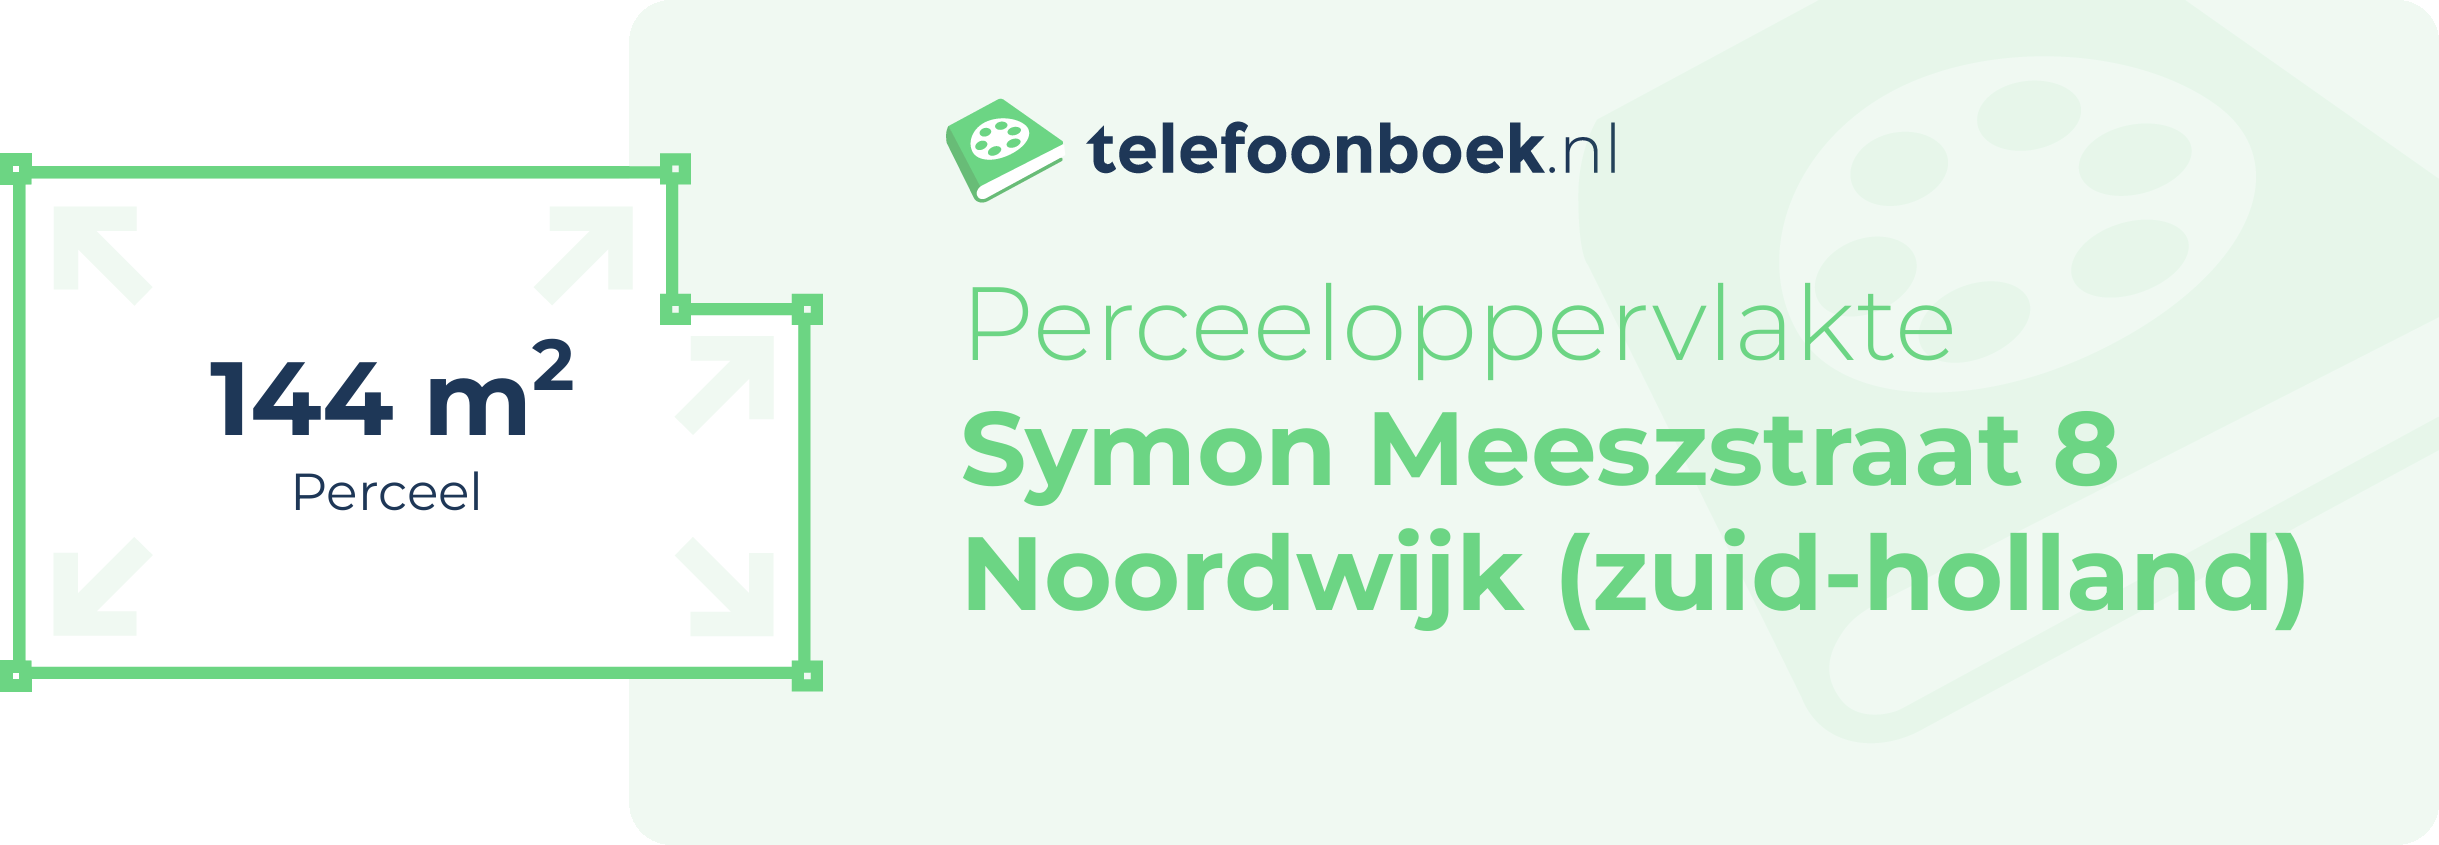 Perceeloppervlakte Symon Meeszstraat 8 Noordwijk (Zuid-Holland)